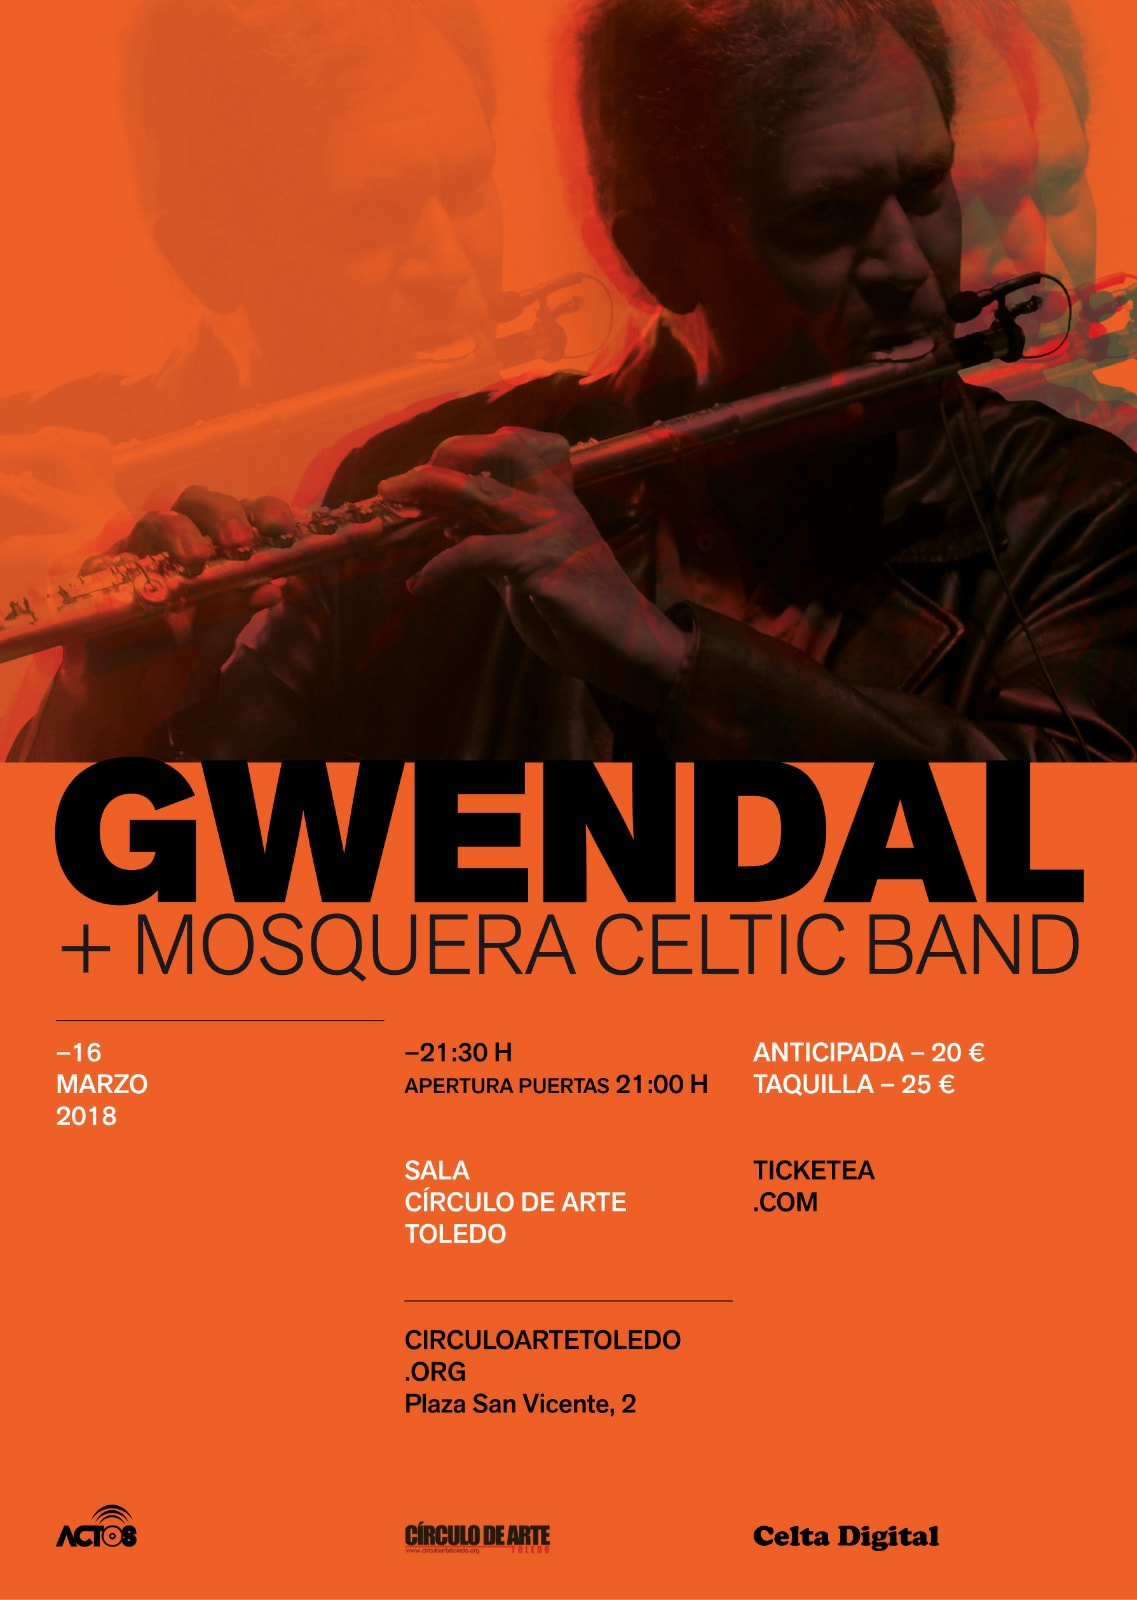 ·Mosquera Celtic Band· + GWENDAL / Concierto conjunto ("Círculo de Arte", Toledo)